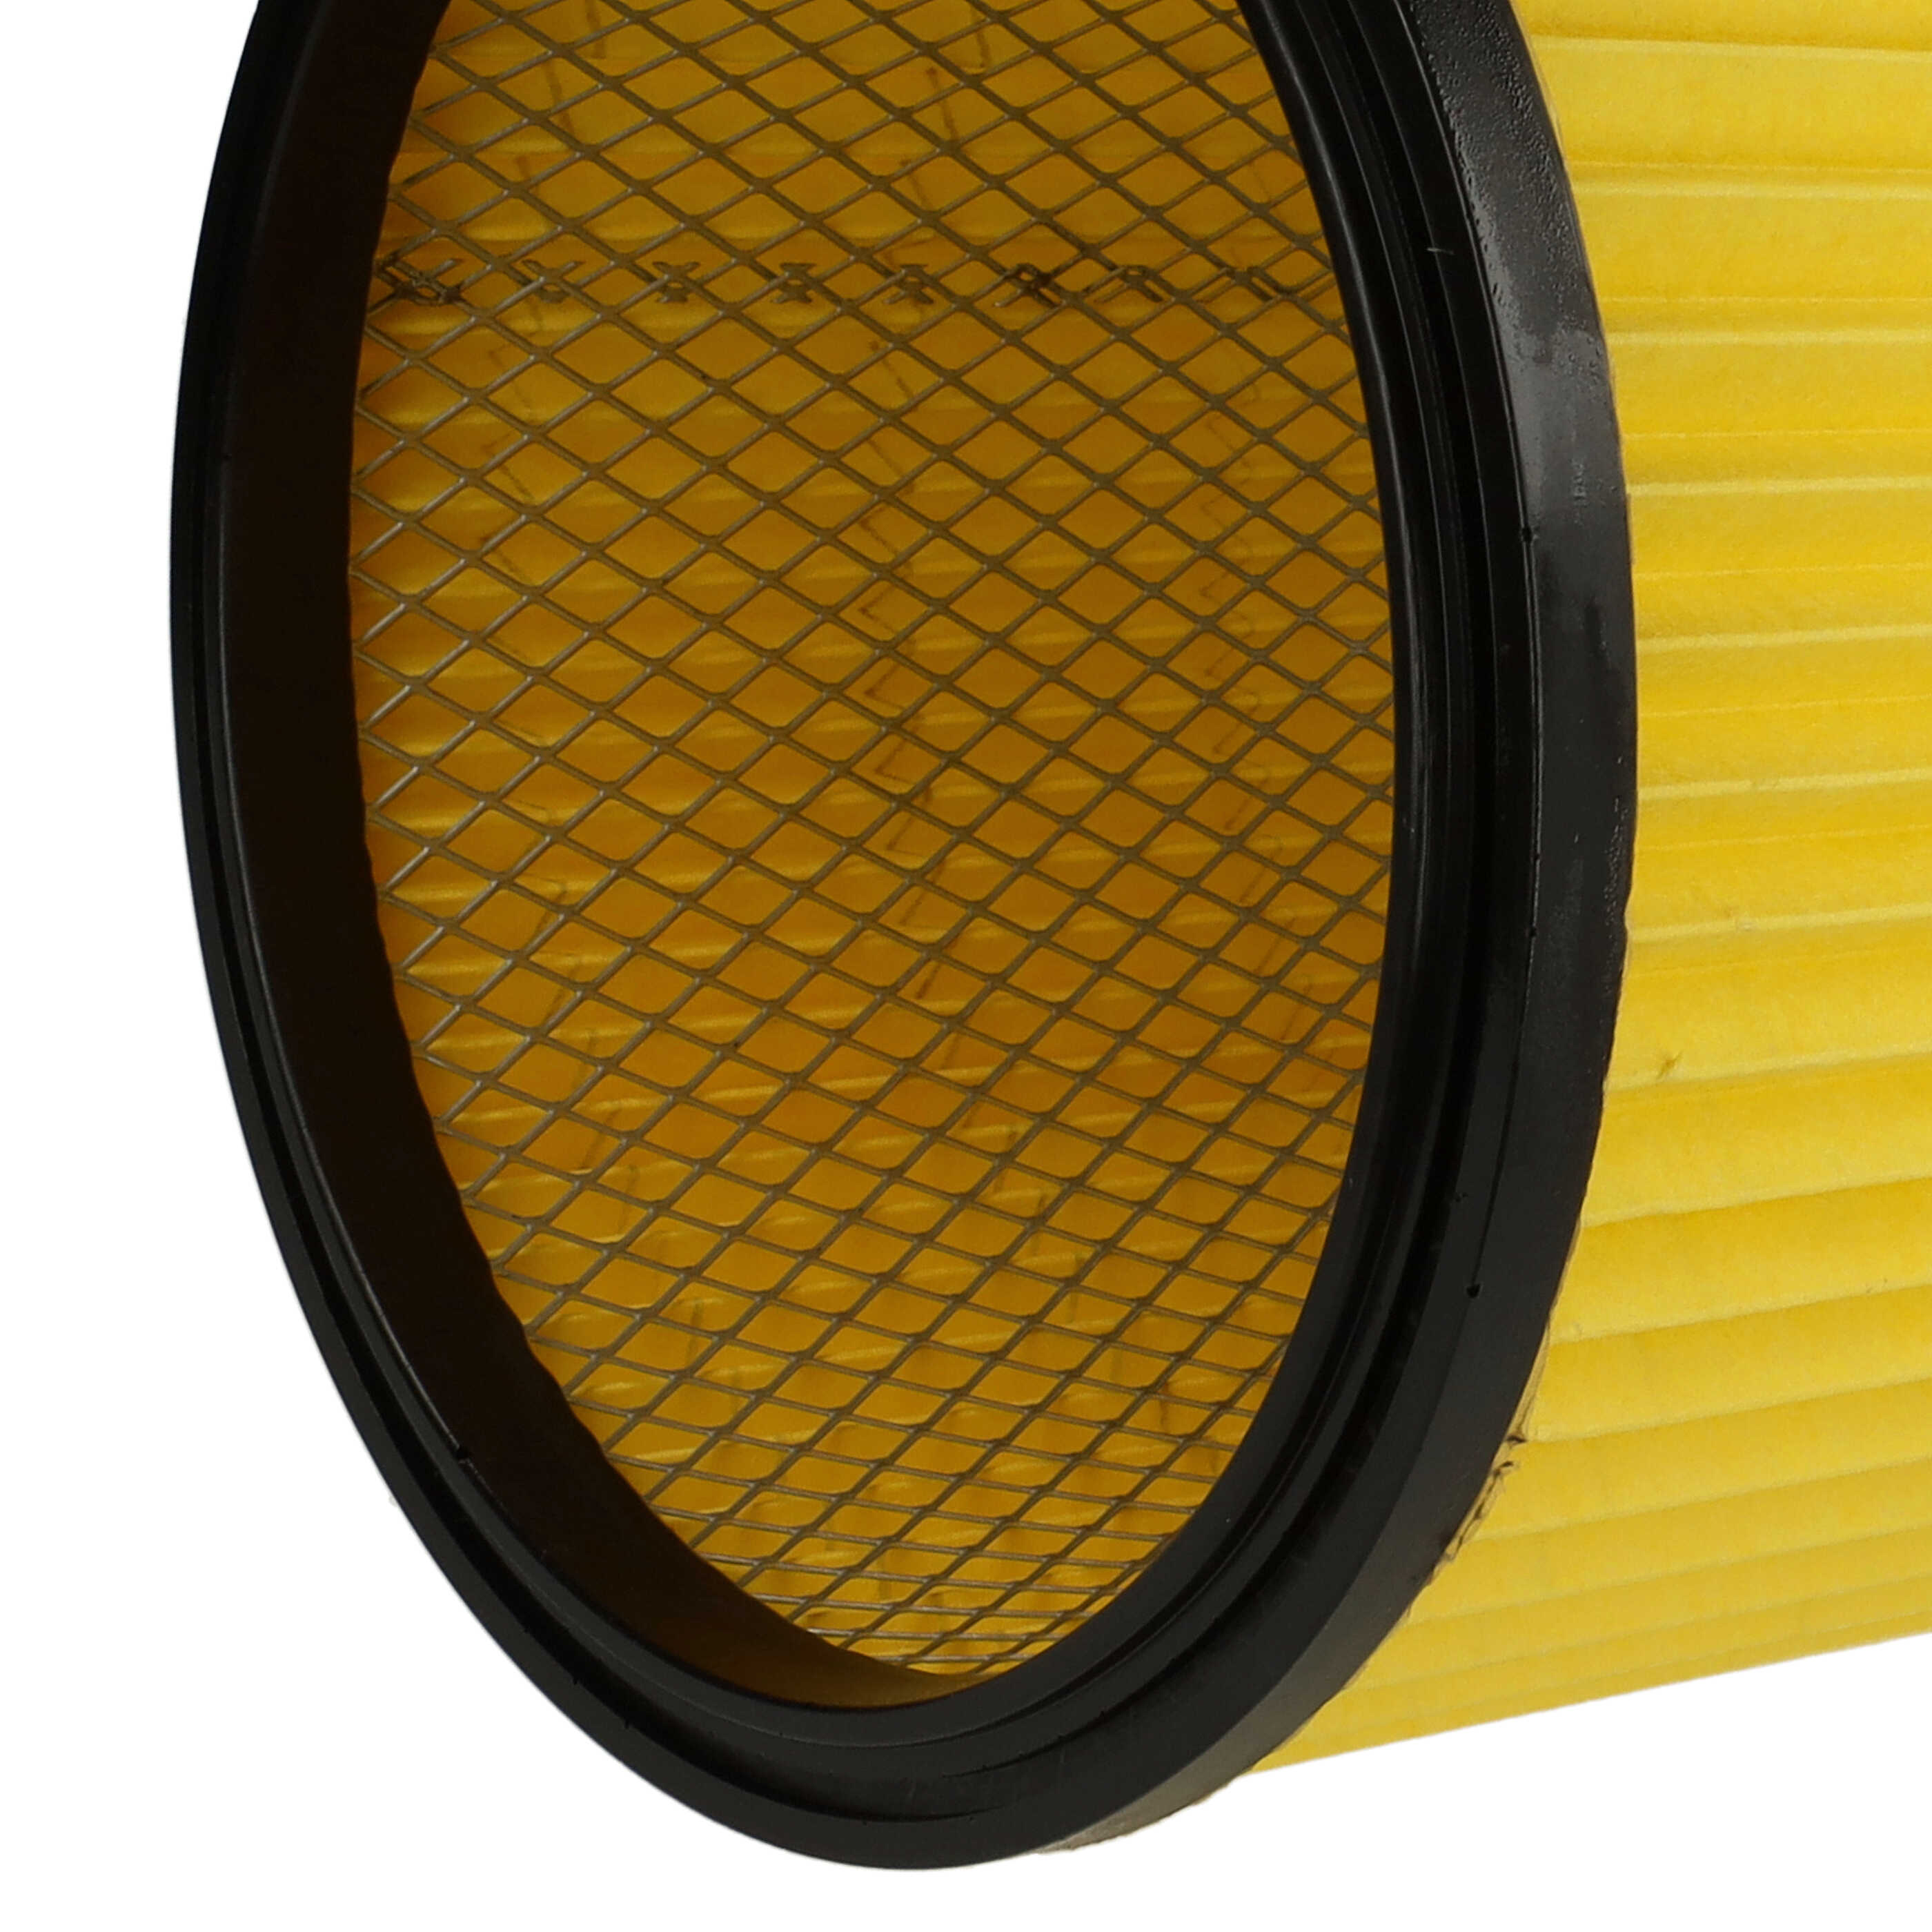 Filtro sostituisce Kärcher 6.414-354.0, 6.414-335.0 per aspirapolvere - filtro cartucce, giallo